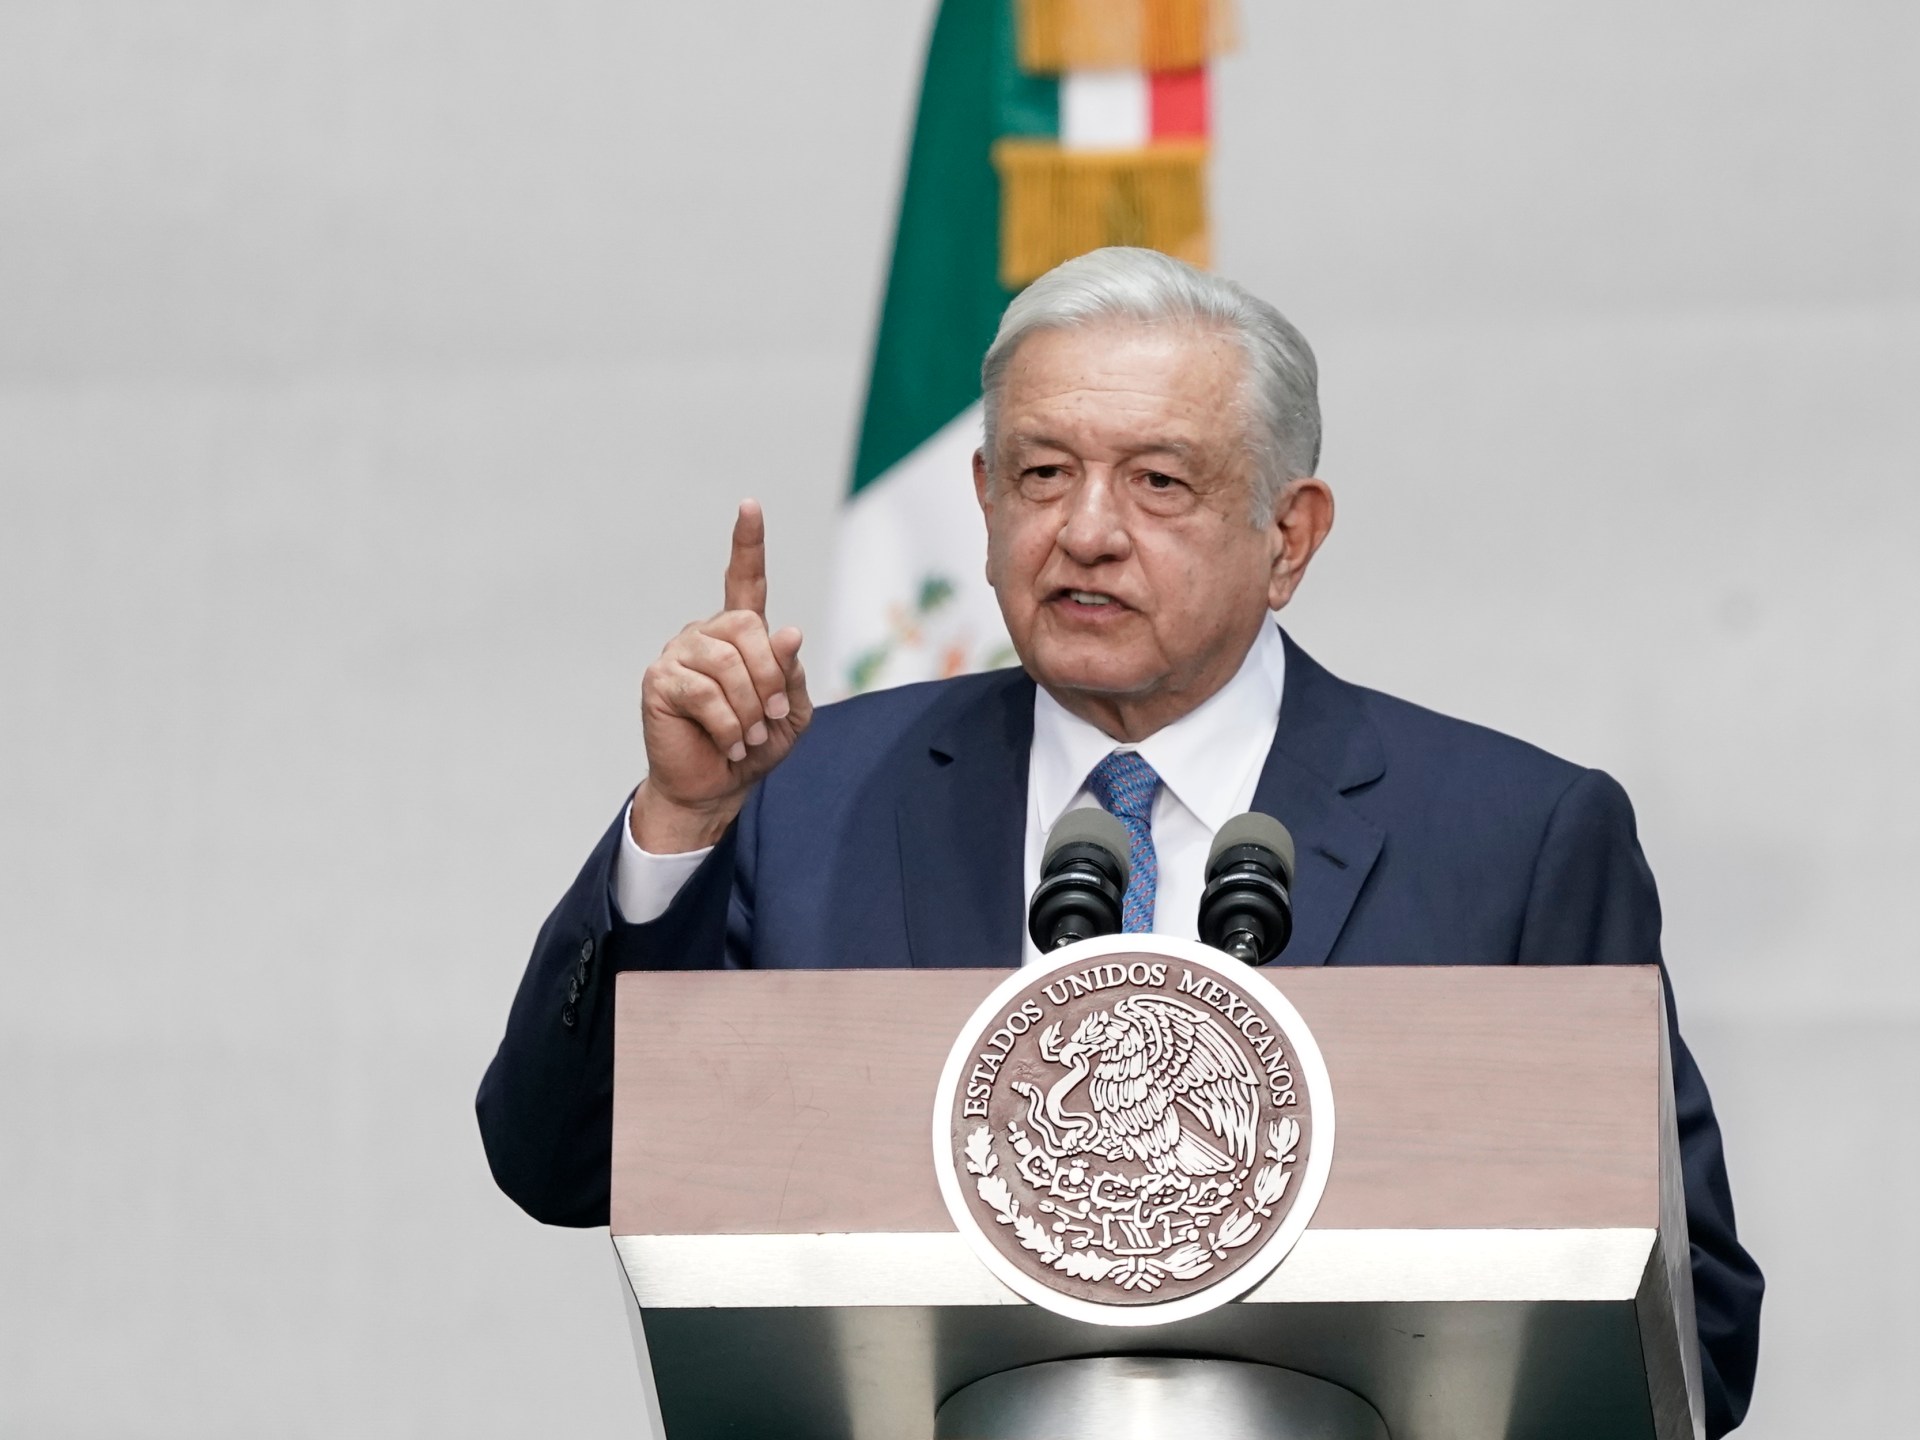 presiden meksiko melanjutkan serangan terhadap oposisi meskipun ada perintah |  Berita Andres Manuel Lopez Obrador